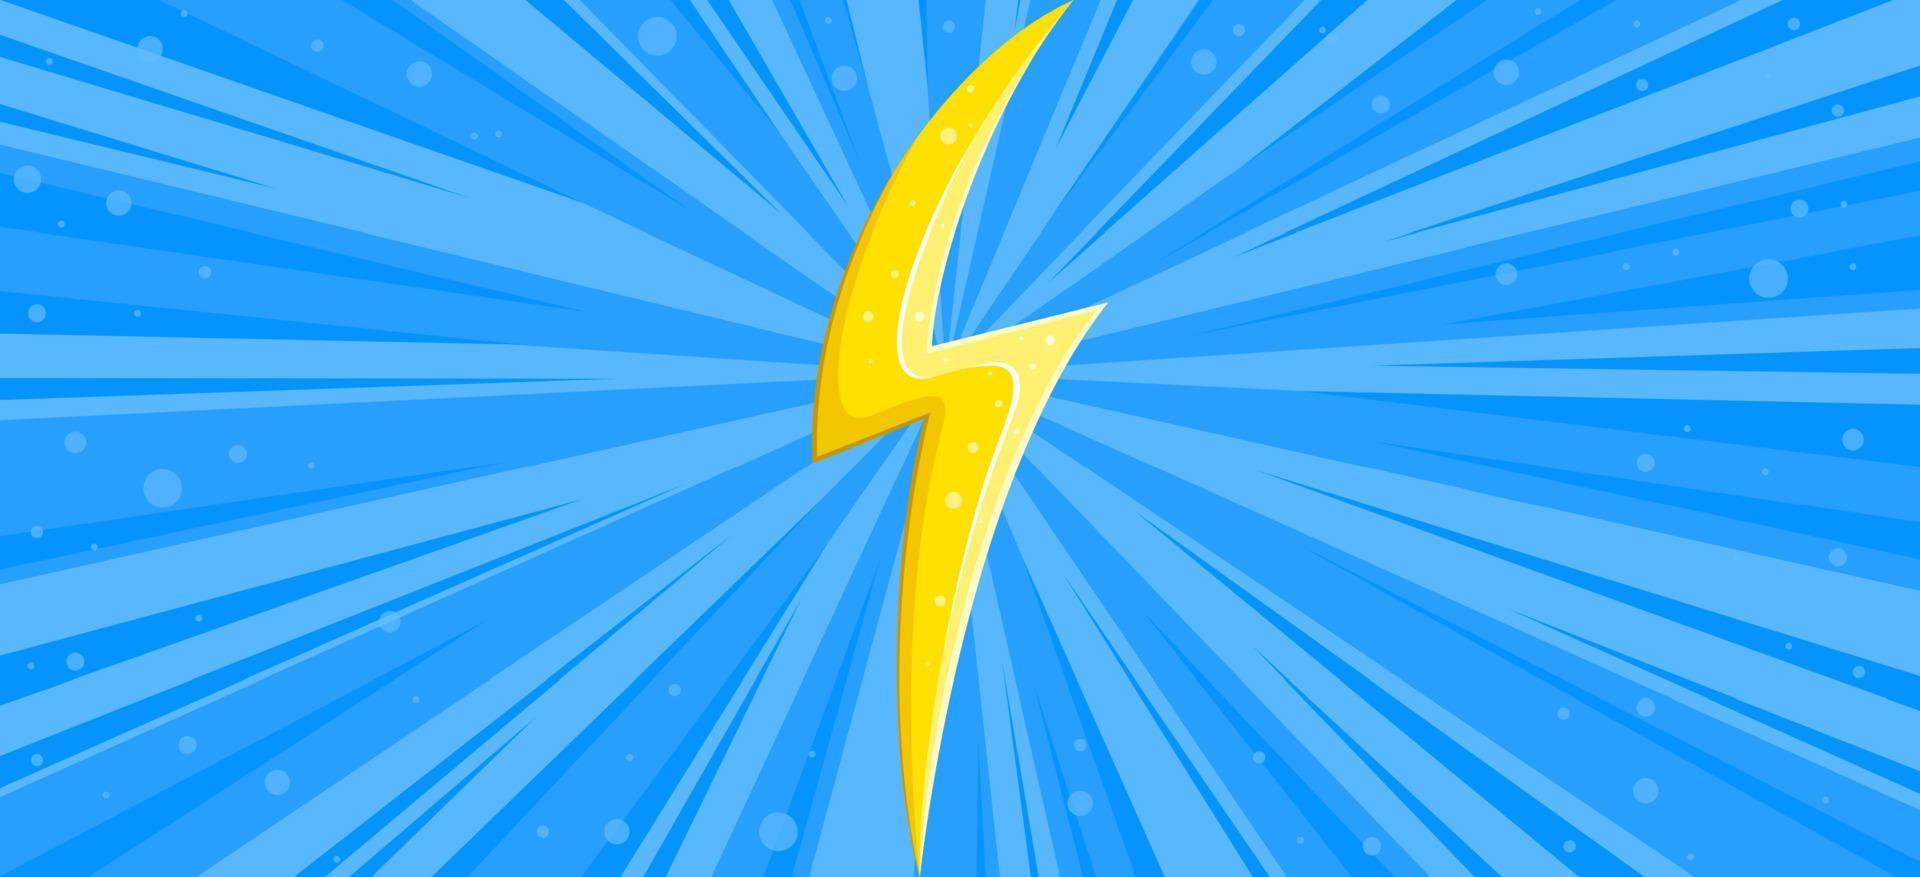 banner de relâmpago com flash amarelo. fundo de ligntning estilo cômico. ilustração vetorial vetor